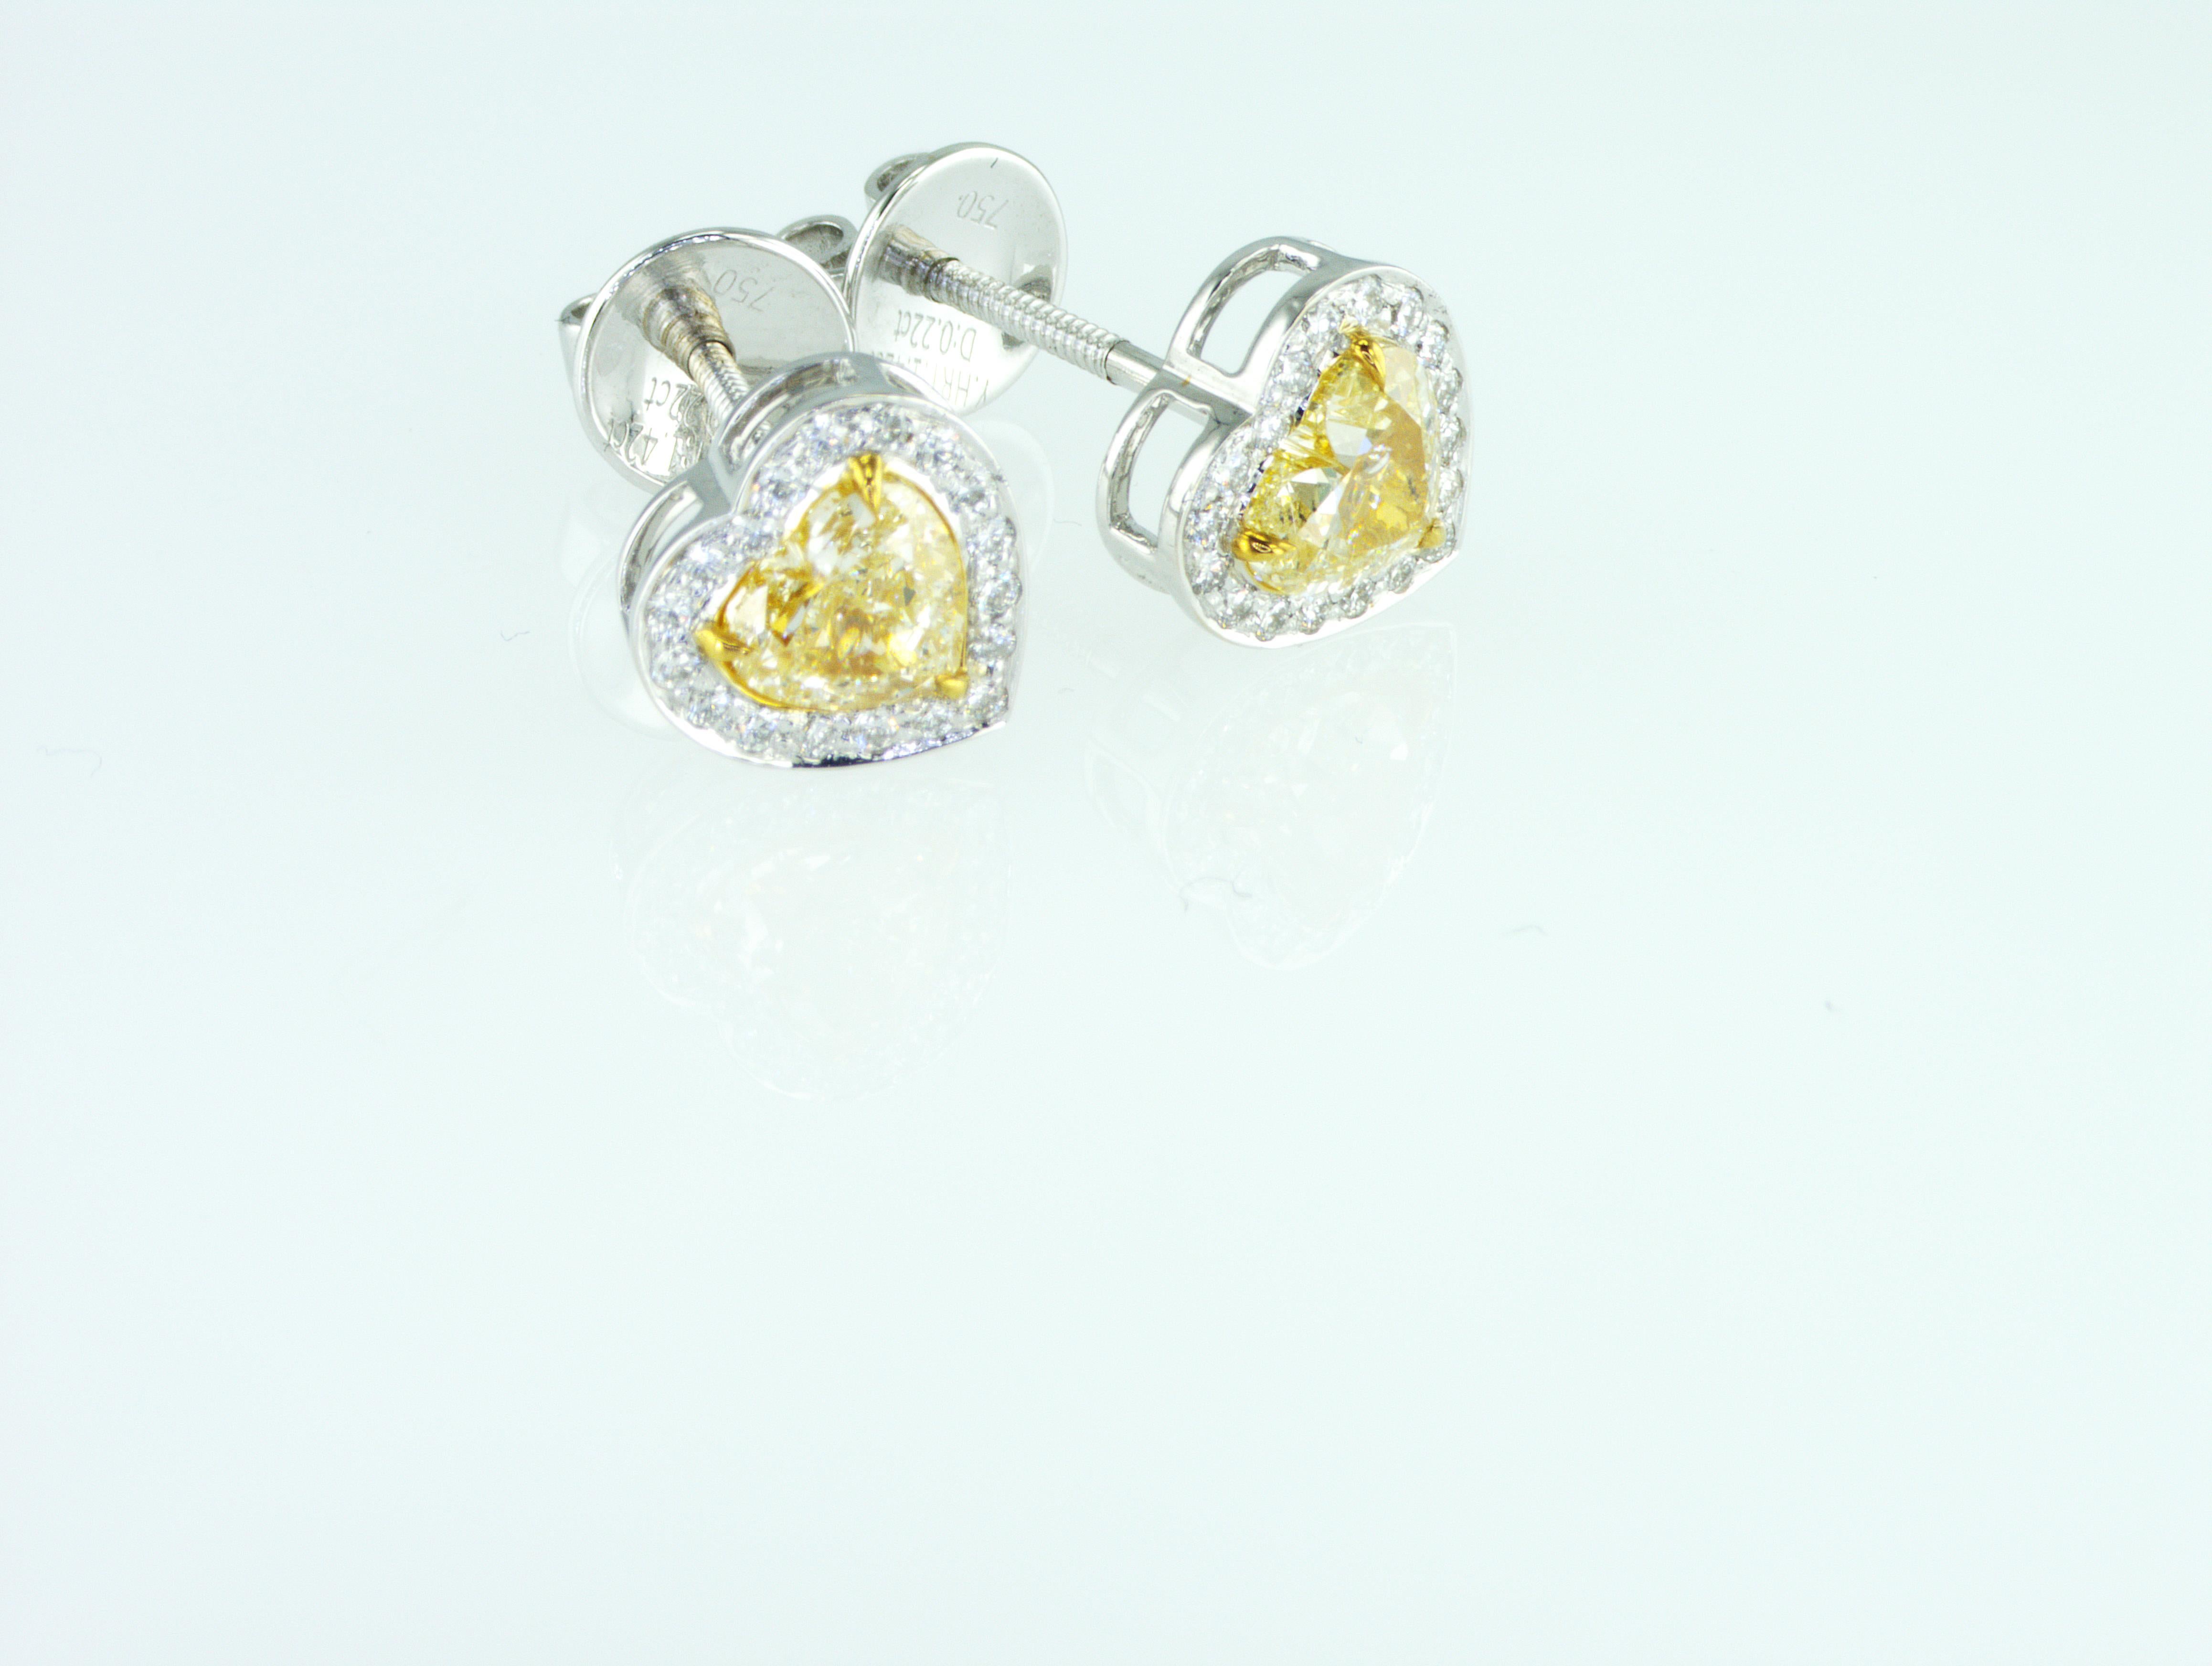 Nous sommes une société de production de diamants naturels située à Dubaï.
Rare diamant naturel de 1,66 carat de couleur jaune fantaisie en forme de coeur Boucles d'oreilles. 
Le poids total des diamants naturels est de 1,66 carat. Tous nos